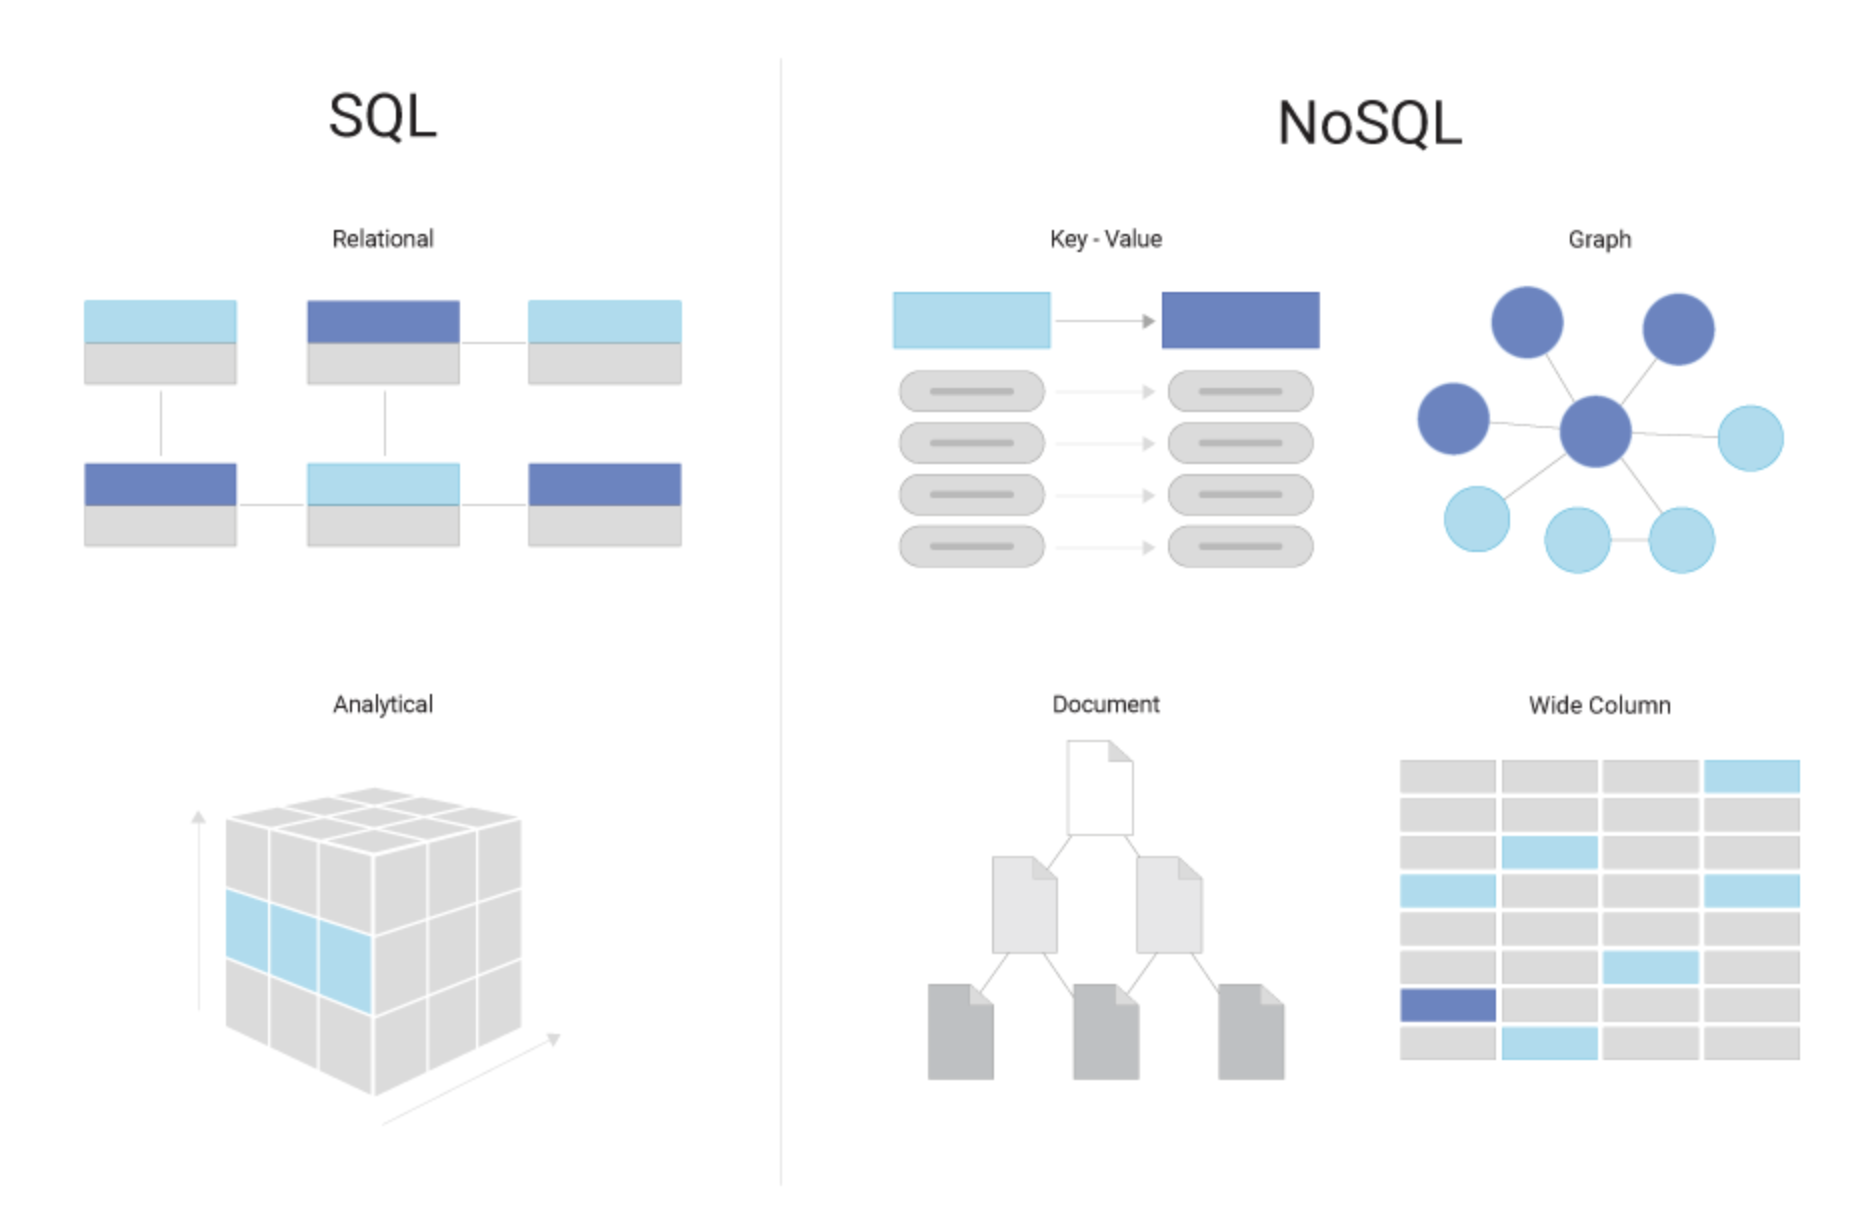 thiết kế cơ sở dữ liệu nosql